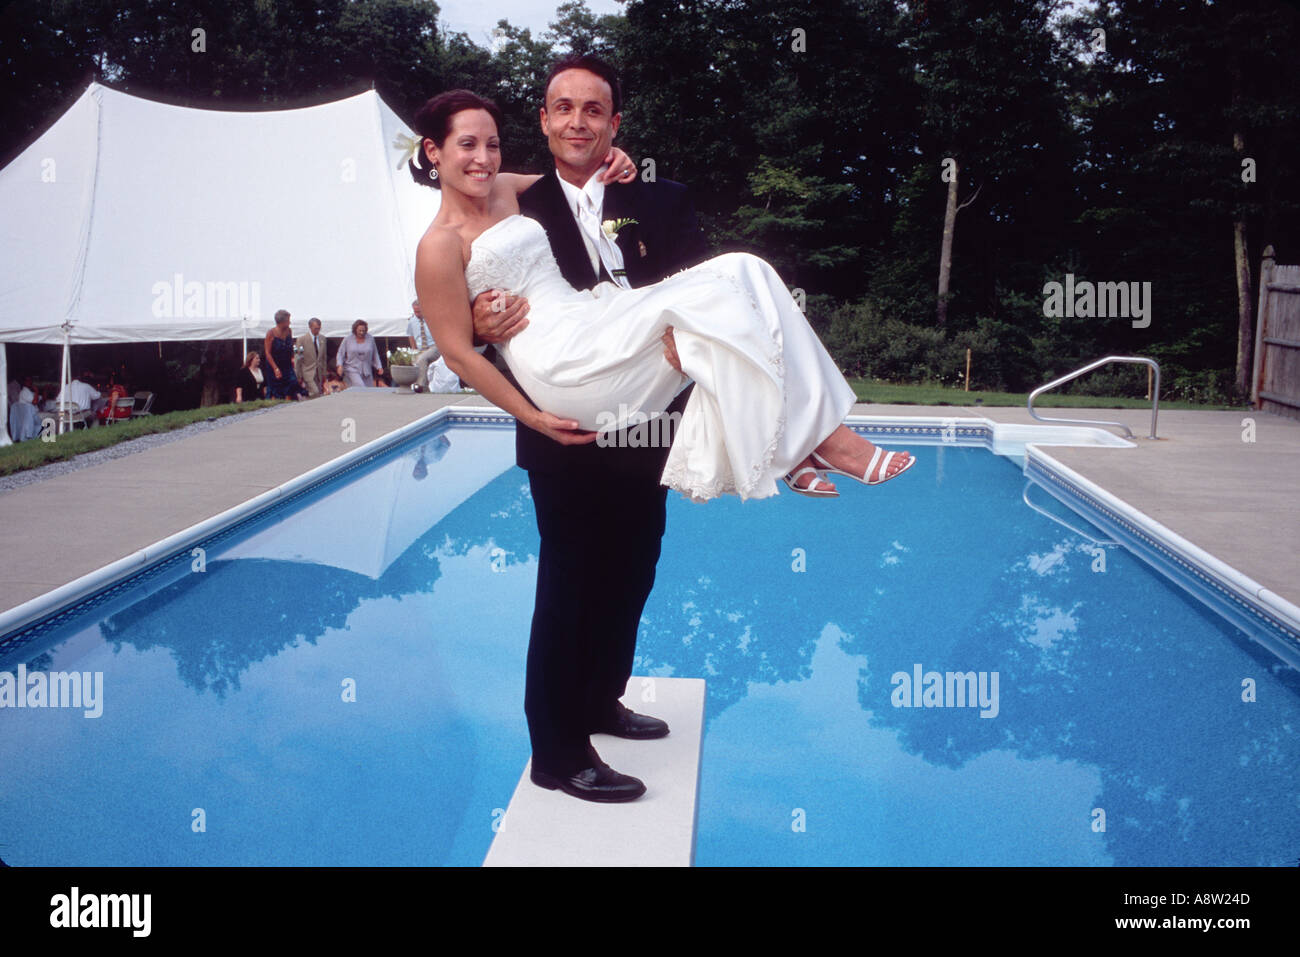 Glückliches Paar Braut und Bräutigam nach der Trauung stehen auf Tauchen Pool traditionelle amerikanische Hochzeit Zeremonie an Bord Stockfoto